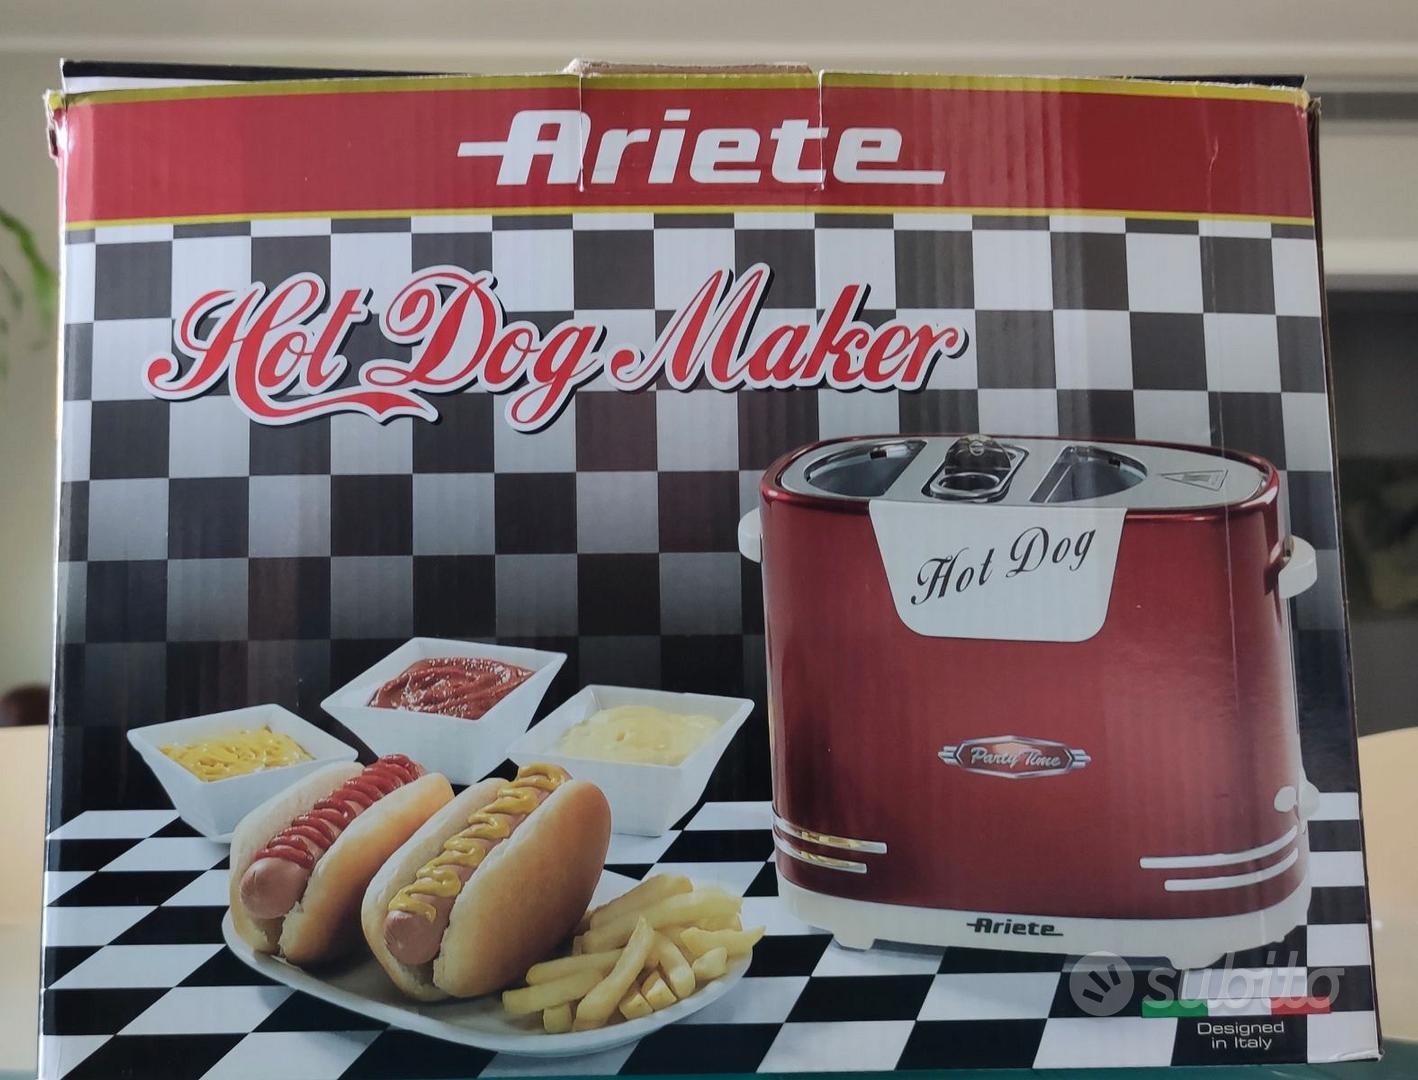 Hot Dog Maker - In a vendita Parma Elettrodomestici